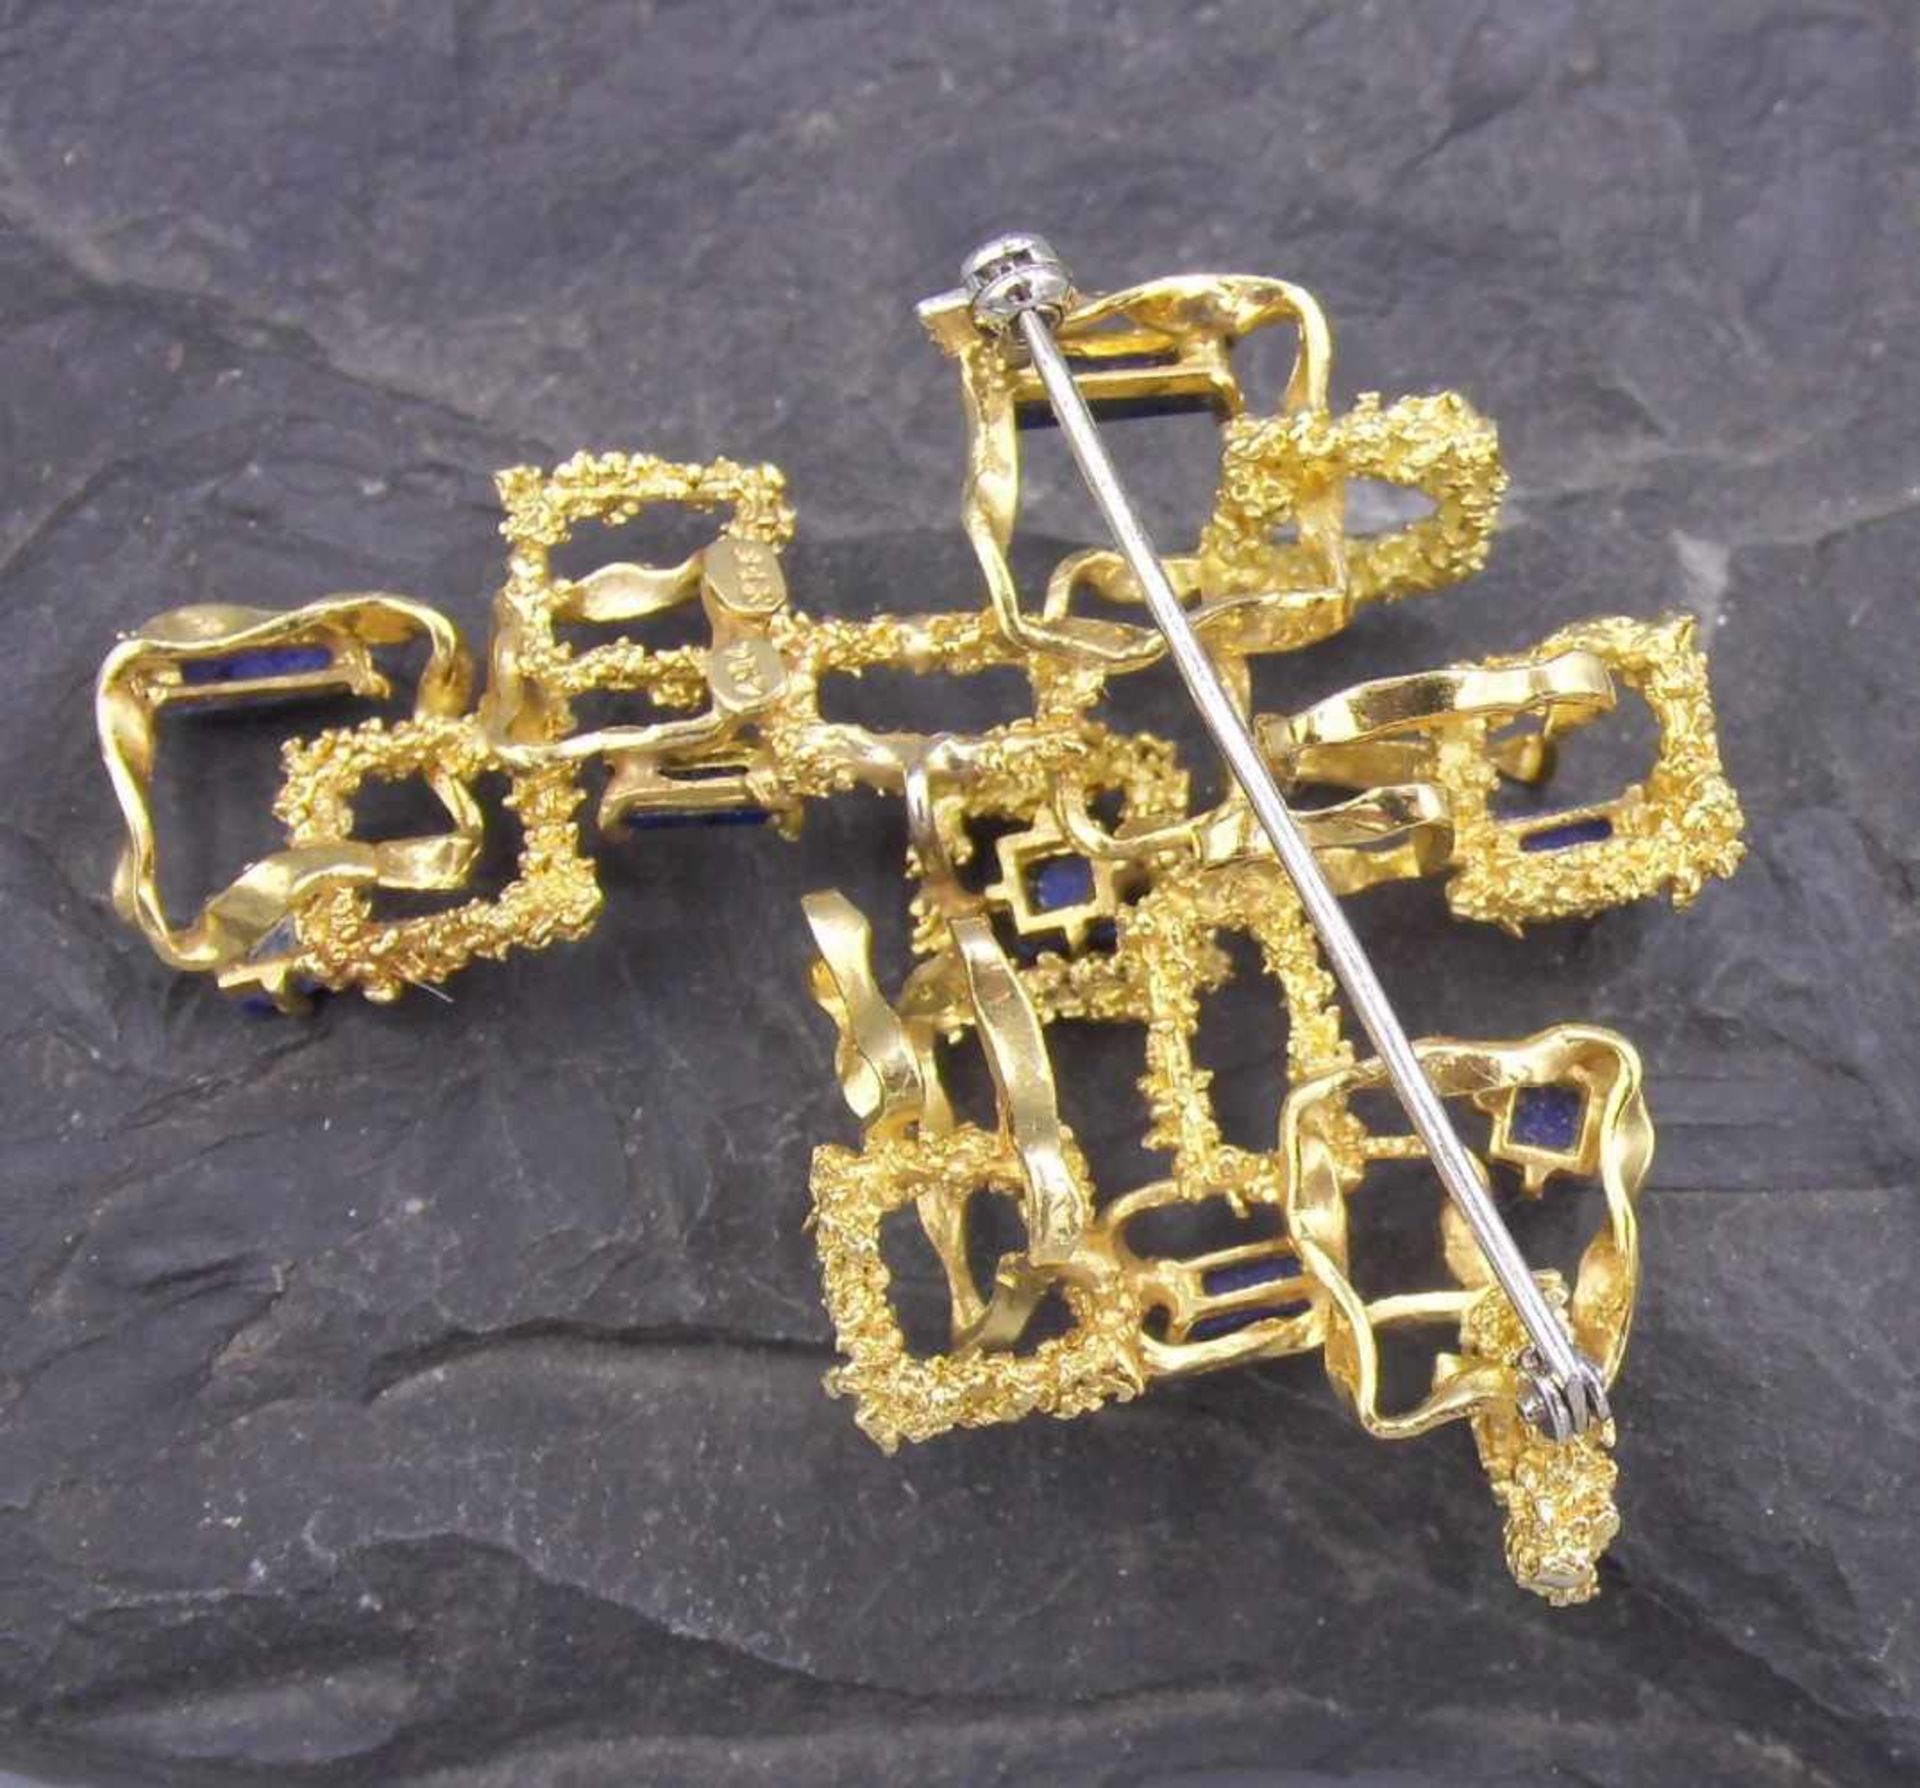 ANHÄNGER / BROSCHE / pendant / brooch, durchbrochen und in Handarbeit gefertigt, Gelbgold, - Image 3 of 3